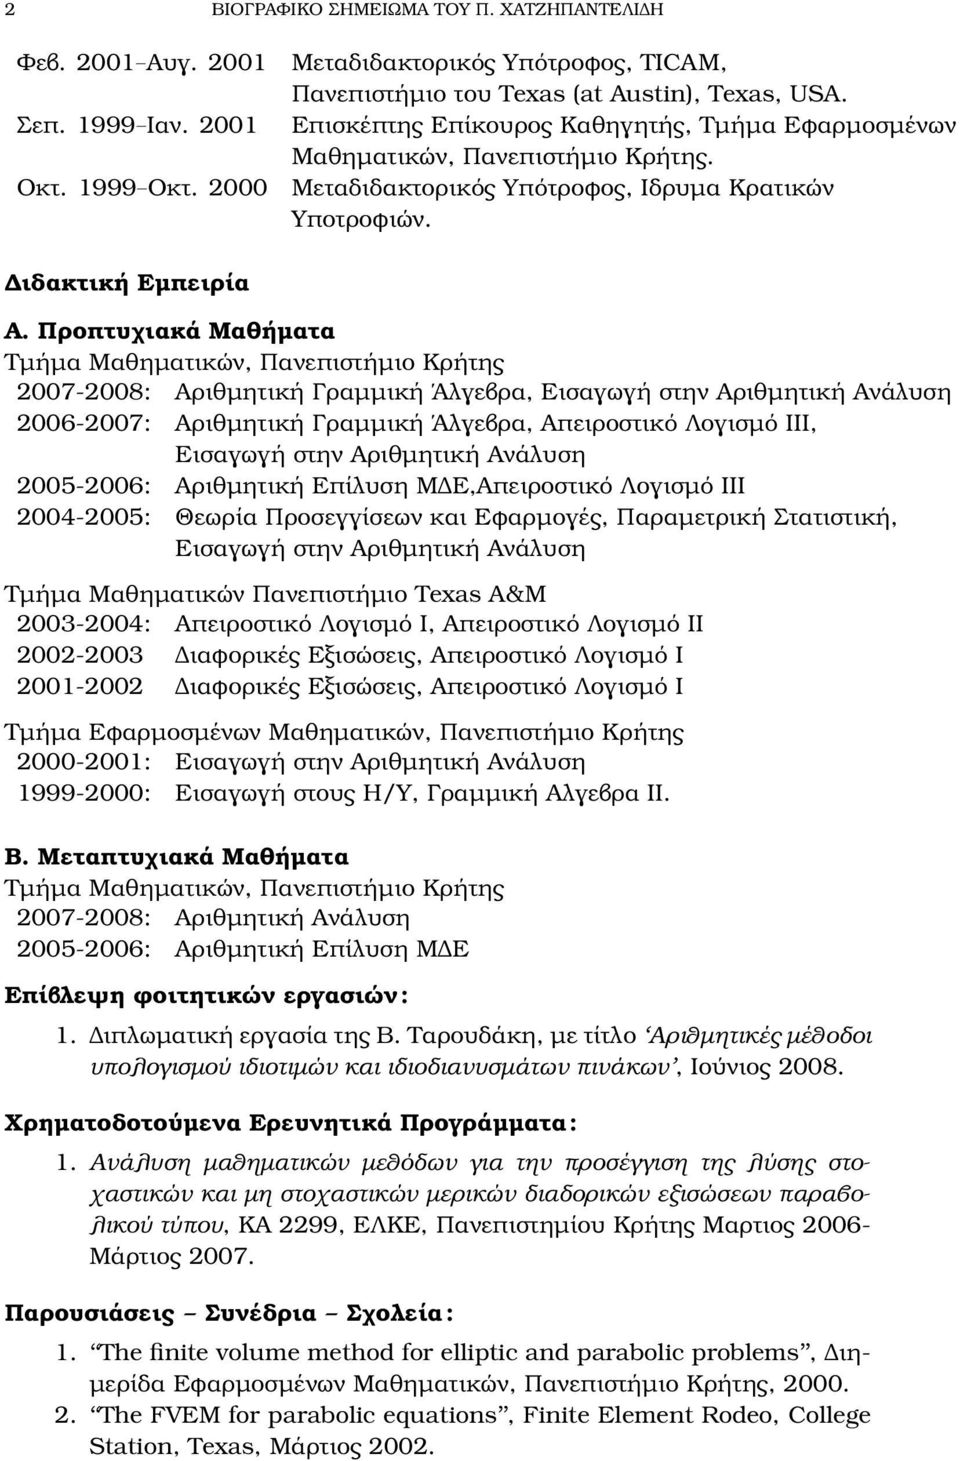 Προπτυχιακά Μαθήµατα Τµήµα Μαθηµατικών, 2007-2008: Αριθµητική Γραµµική Άλγεβρα, Εισαγωγή στην Αριθµητική Ανάλυση 2006-2007: Αριθµητική Γραµµική Άλγεβρα, Απειροστικό Λογισµό ΙΙΙ, Εισαγωγή στην